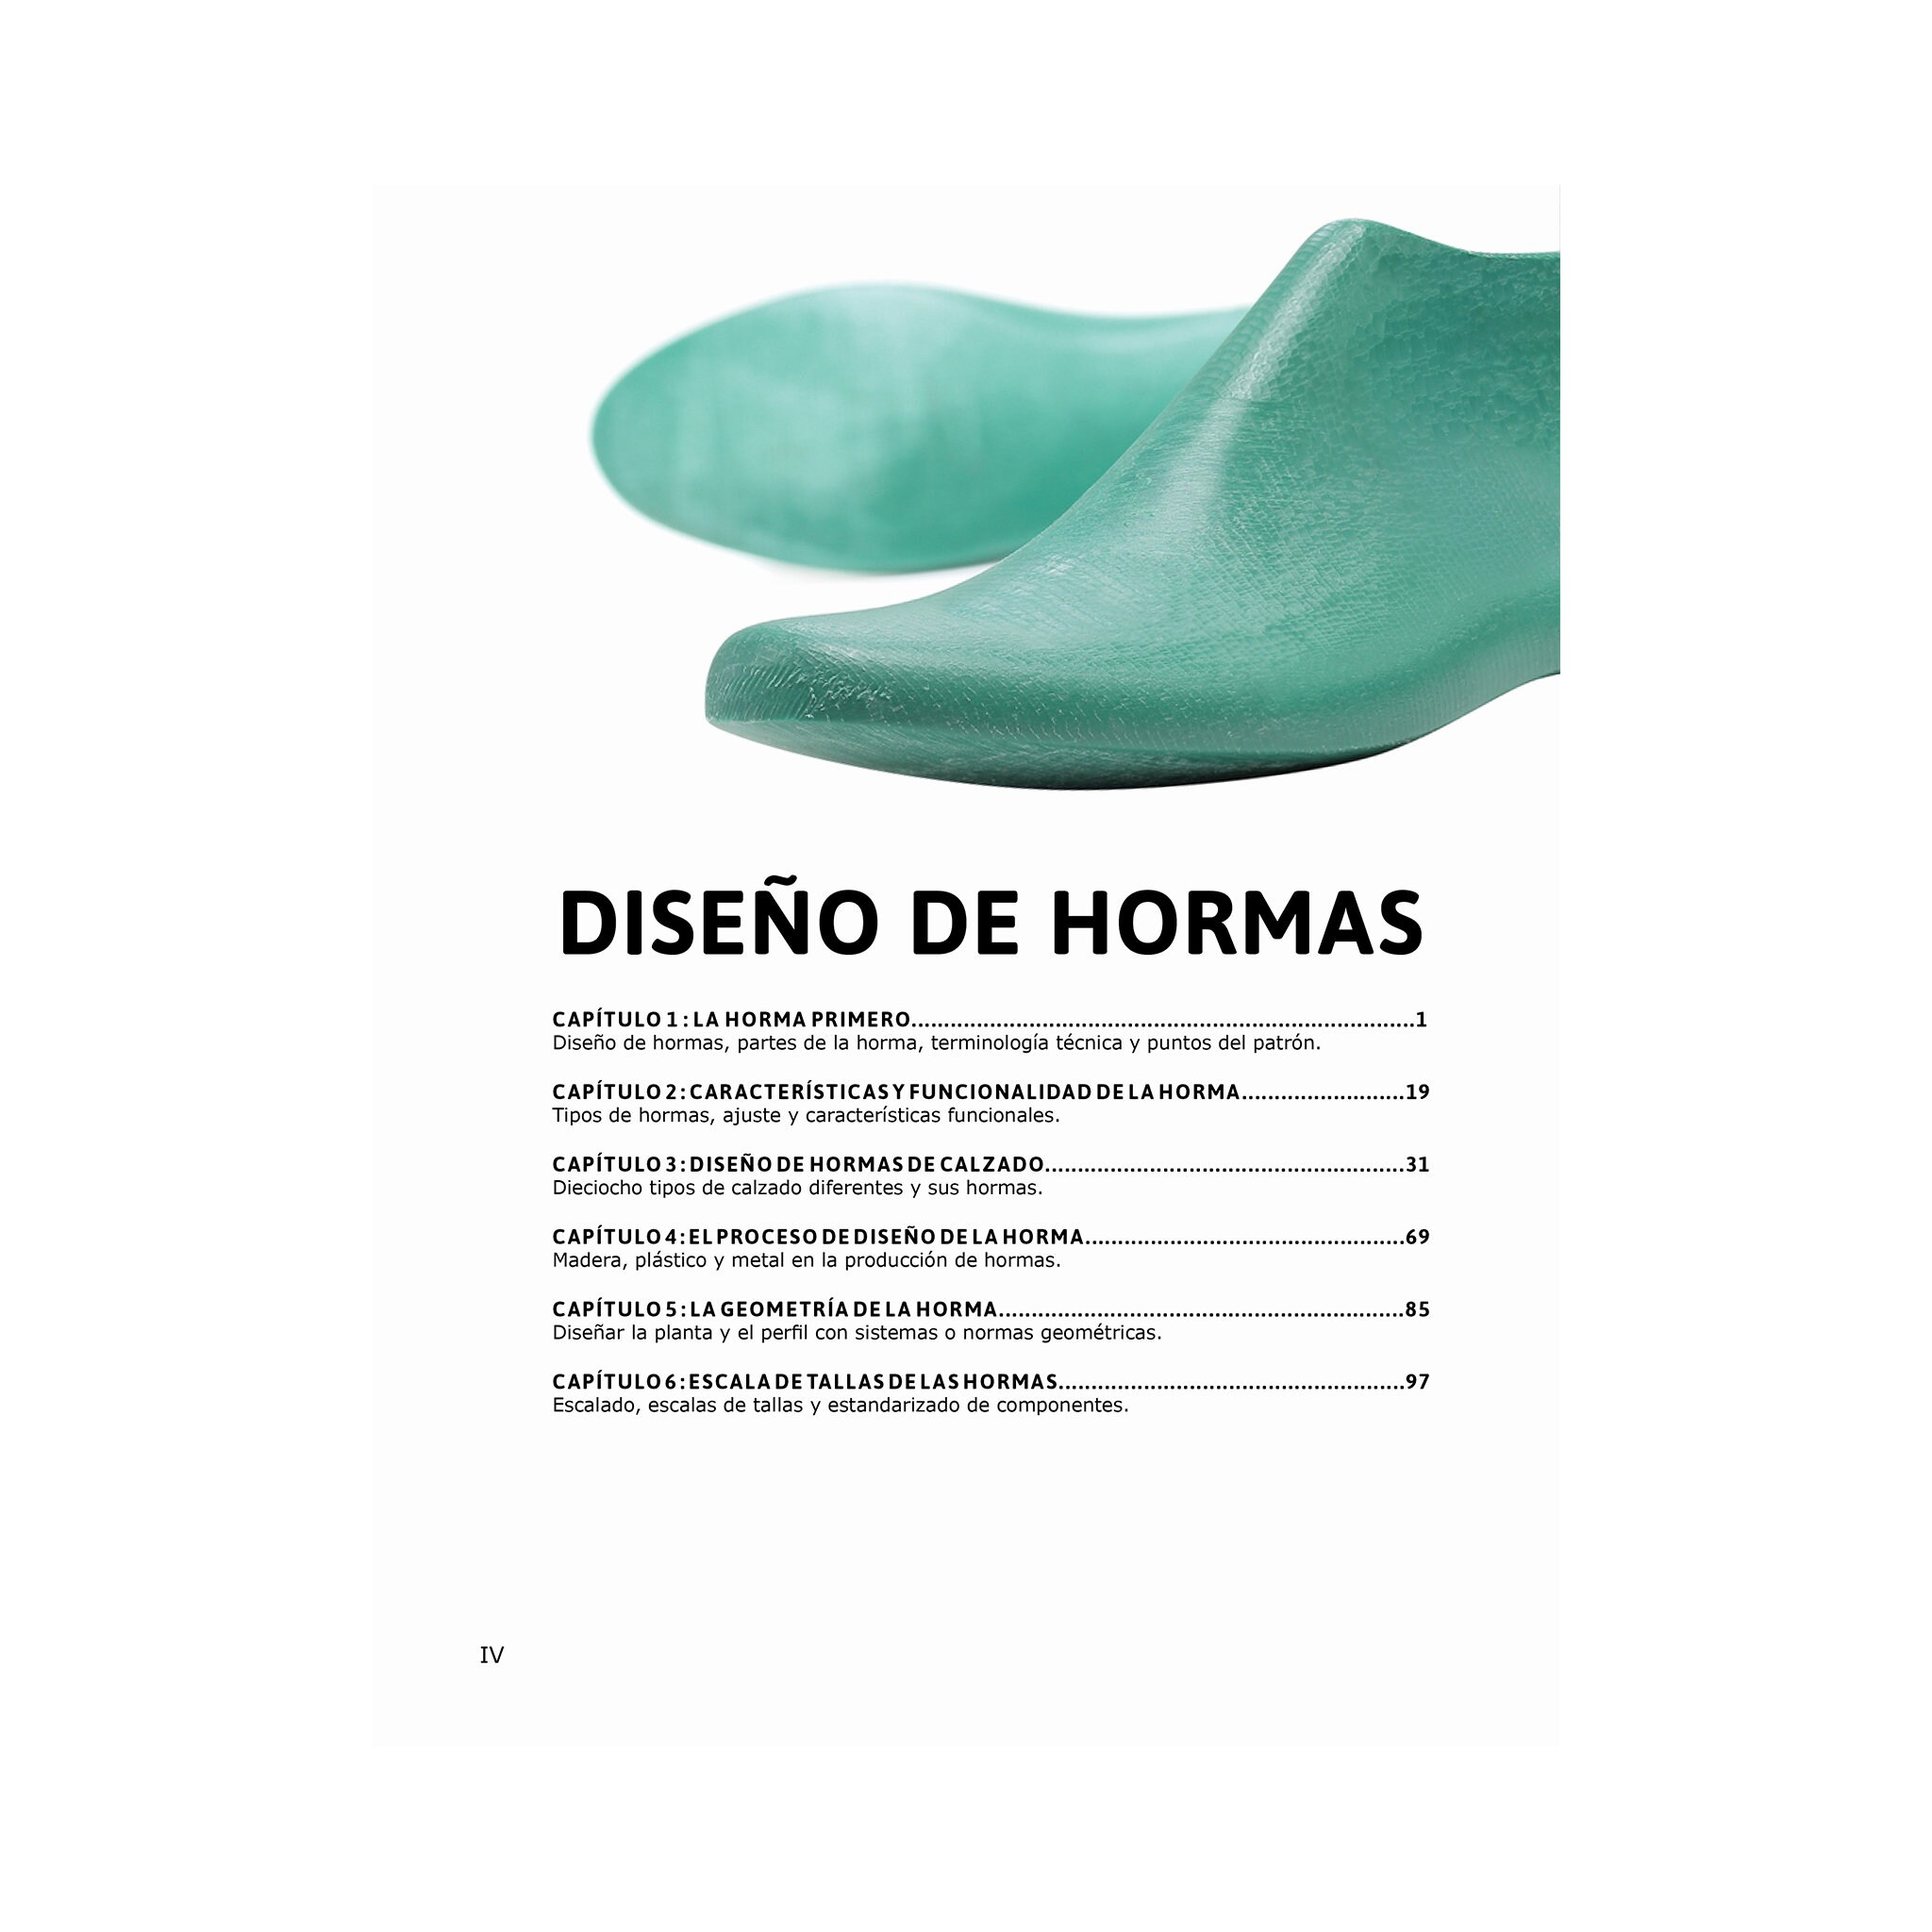 telar Satisfacer Sudamerica Patronaje De Calzado Y Diseño De Hormas: Descarga Digital - Etsy